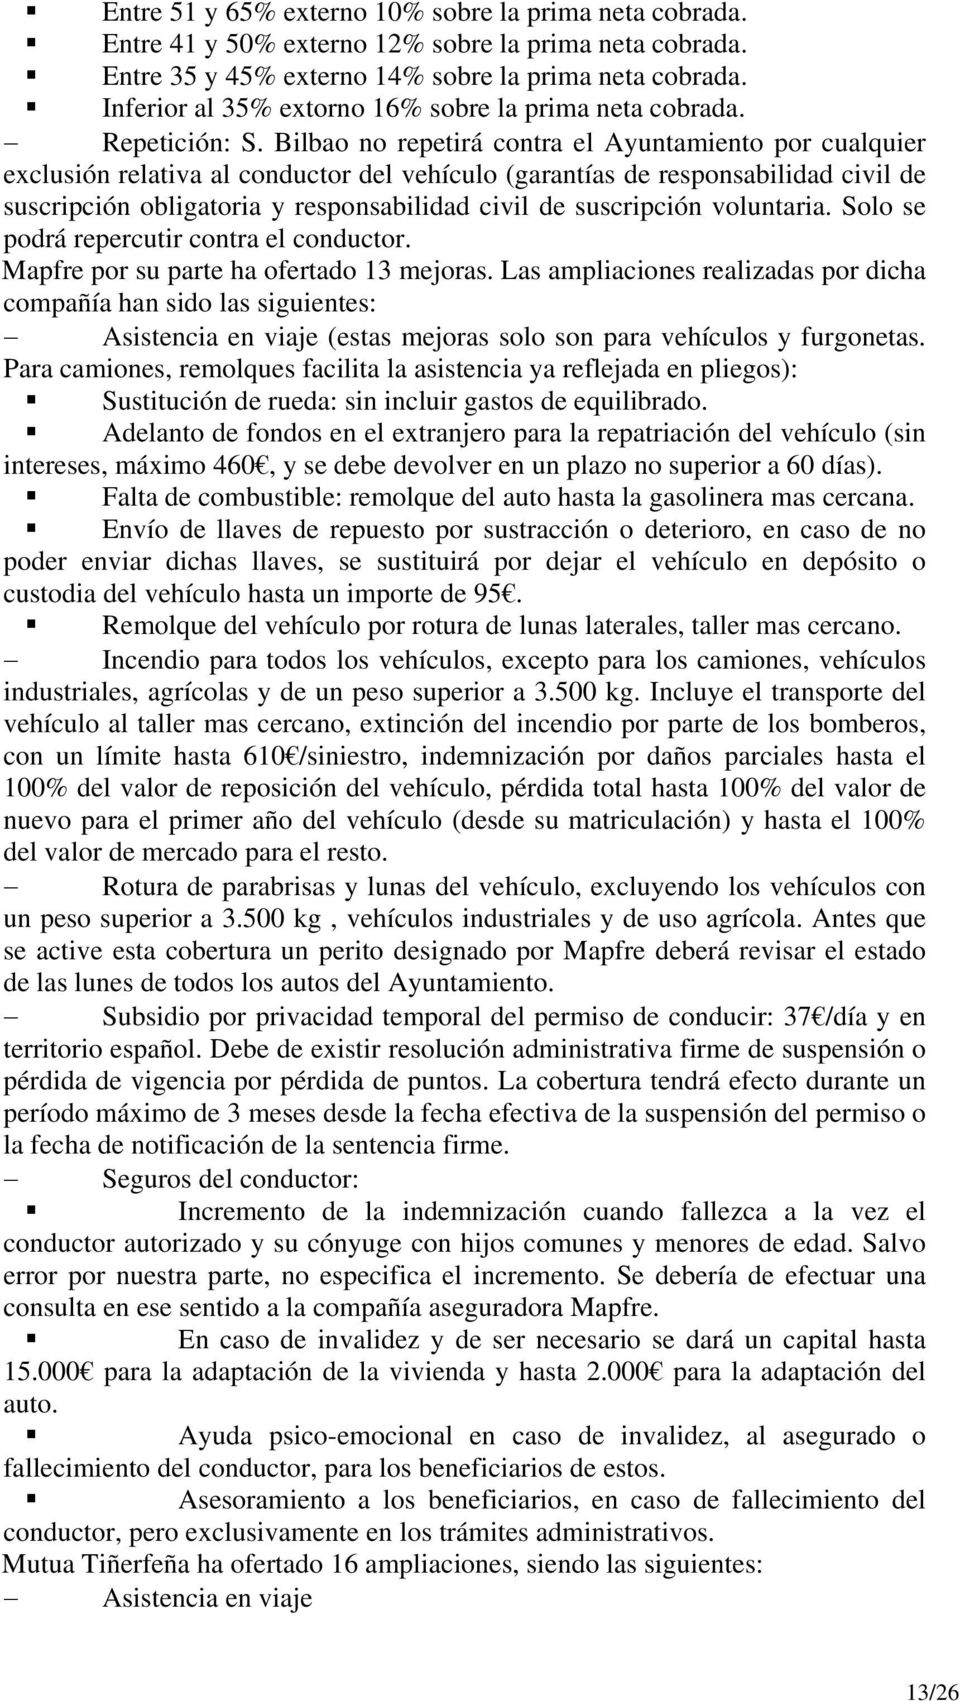 Bilbao no repetirá contra el Ayuntamiento por cualquier exclusión relativa al conductor del vehículo (garantías de responsabilidad civil de suscripción obligatoria y responsabilidad civil de